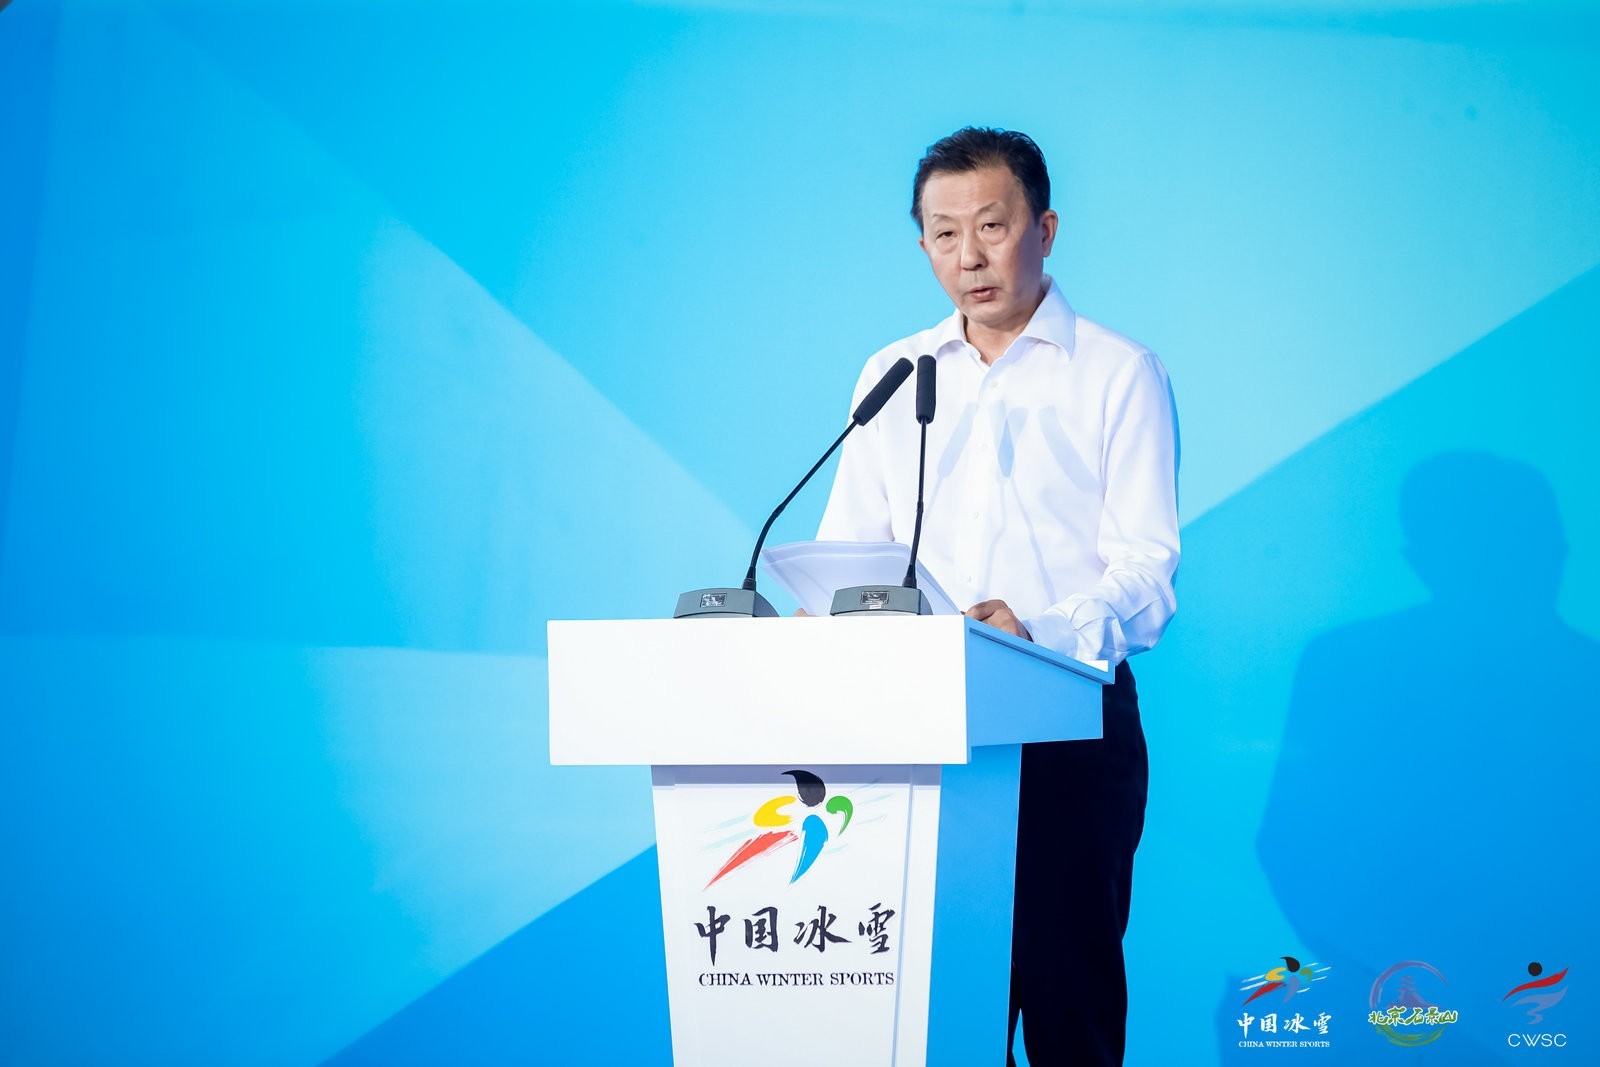 体育总局副局长李颖川:产业创新推动冰雪运动可持续、高质量发展